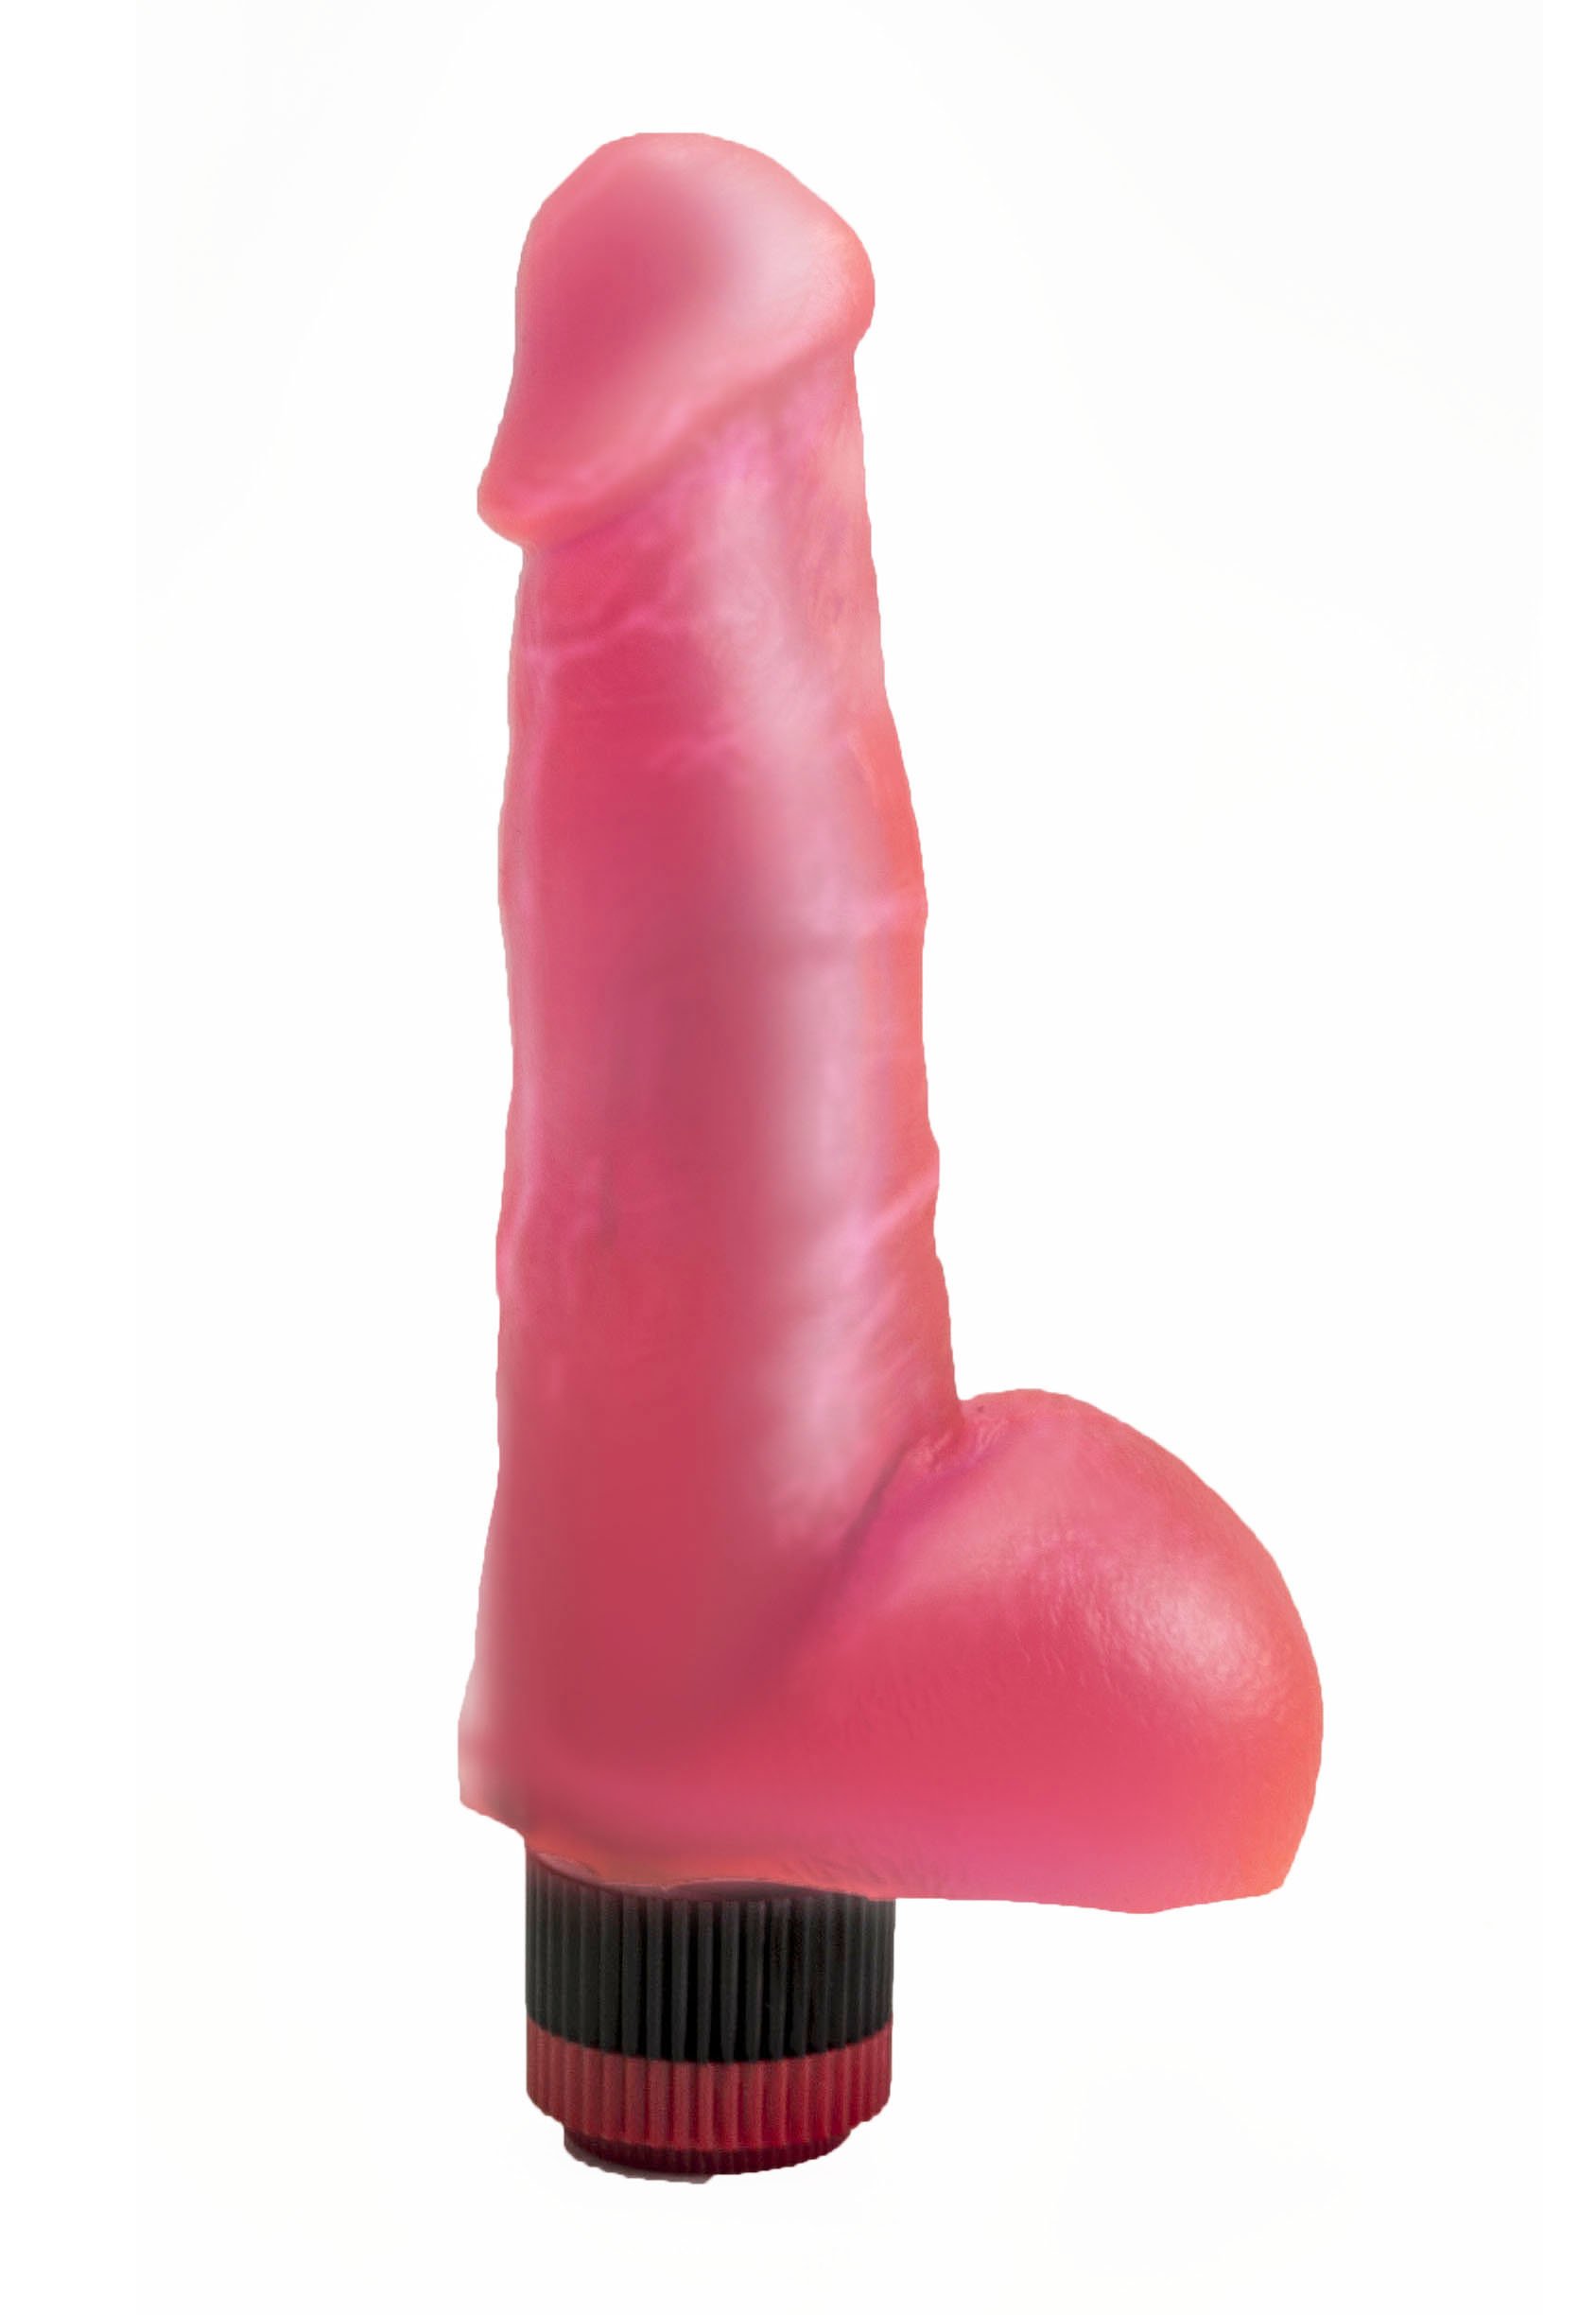 Гелевый женский вибратор эрегированный пенис, 18 см